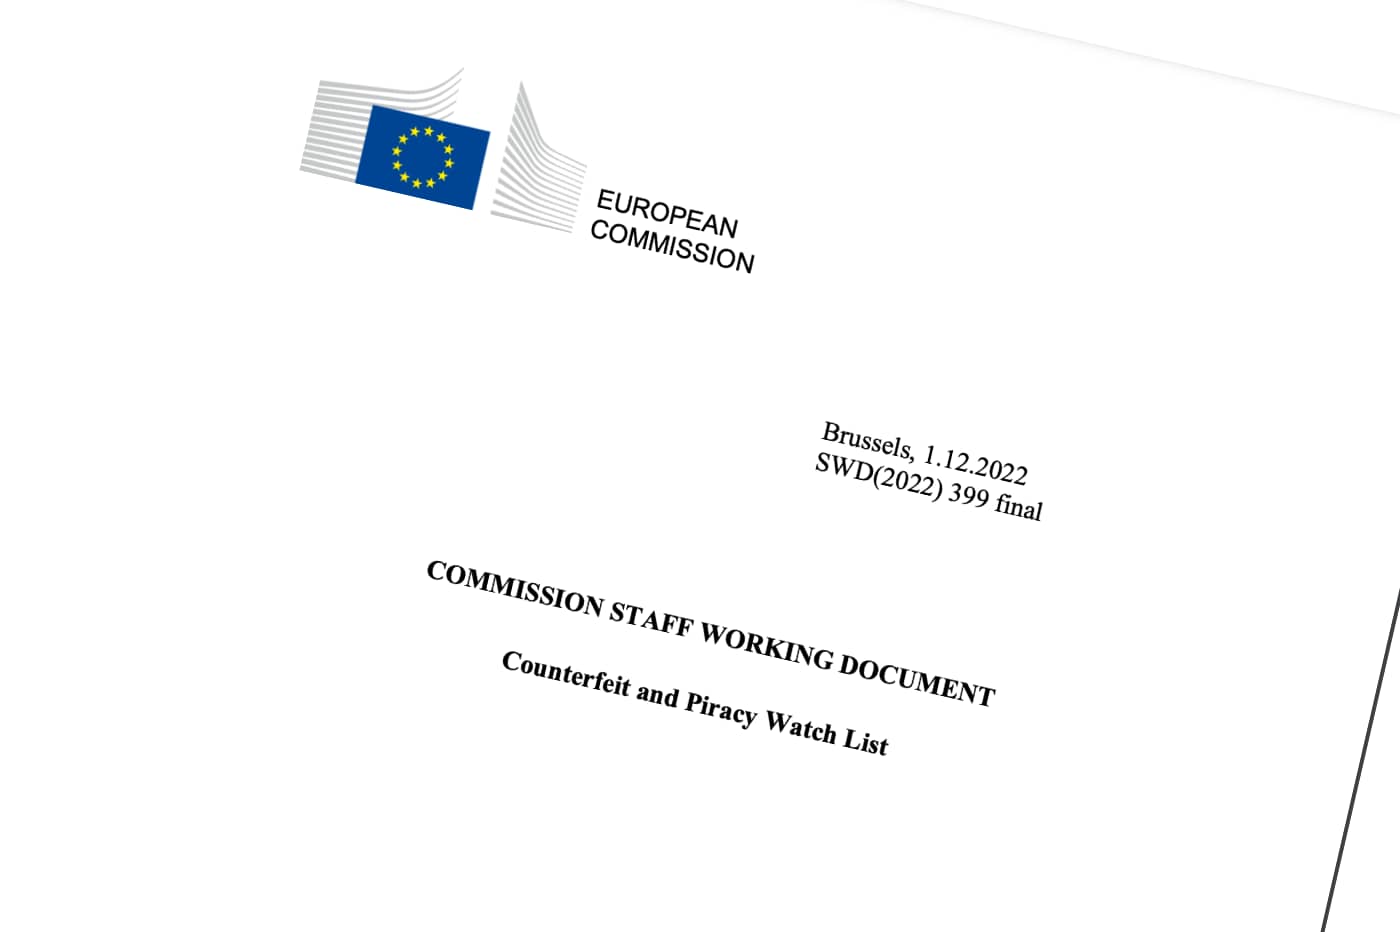 La Counterfeit and Piracy Watch List de la Commission européenne